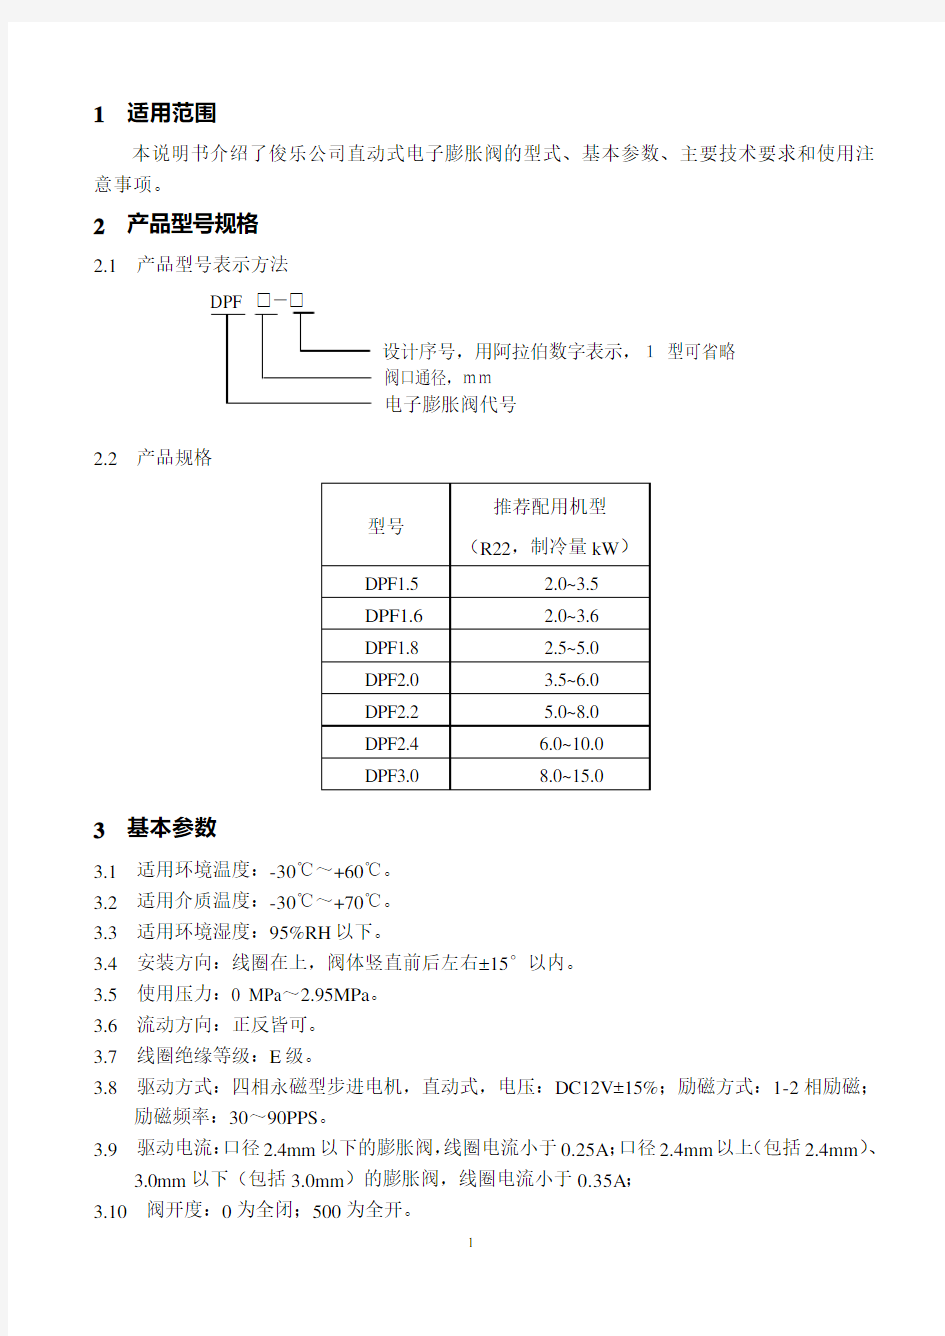 DPF电子膨胀阀产品说明书-2003